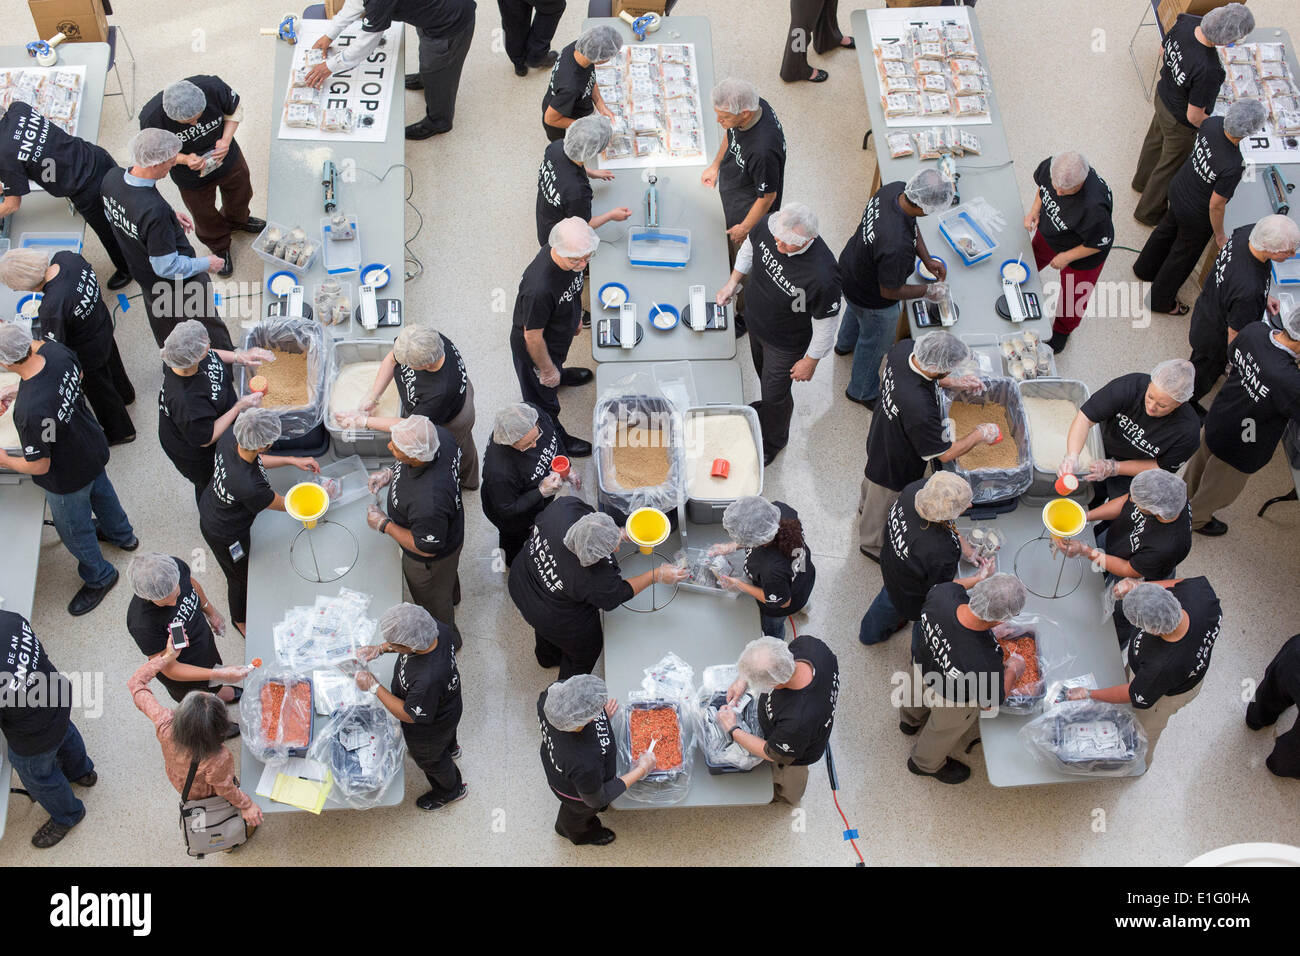 Auburn Hills, Michigan, USA. Chrysler employés bénévoles préparent des forfaits repas pour cesser la faim maintenant, un organisme de secours de la faim. Les aliments doivent être envoyées au Brésil à l'appui de programmes d'alimentation scolaire. Crédit : Jim West/Alamy Live News Banque D'Images